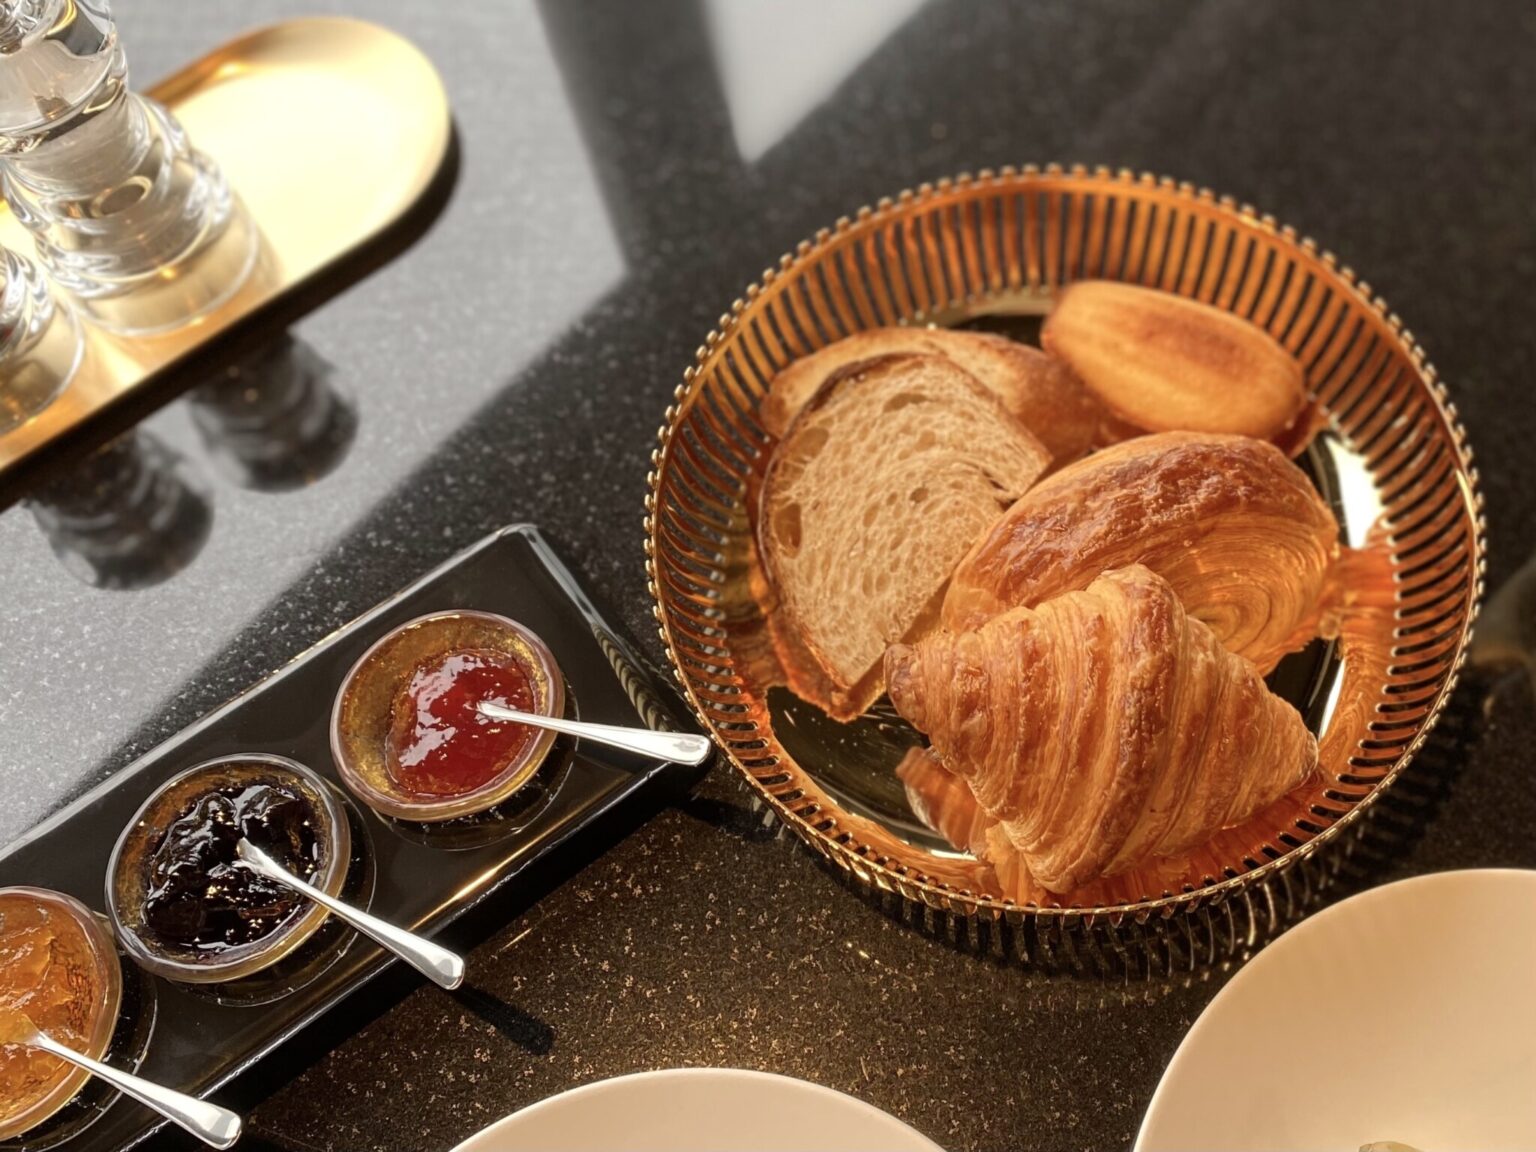 毎朝焼き上げるクロワッサンなどのヴィエノワズリーは、オリジナルジャムとともに。これぞパリの朝。